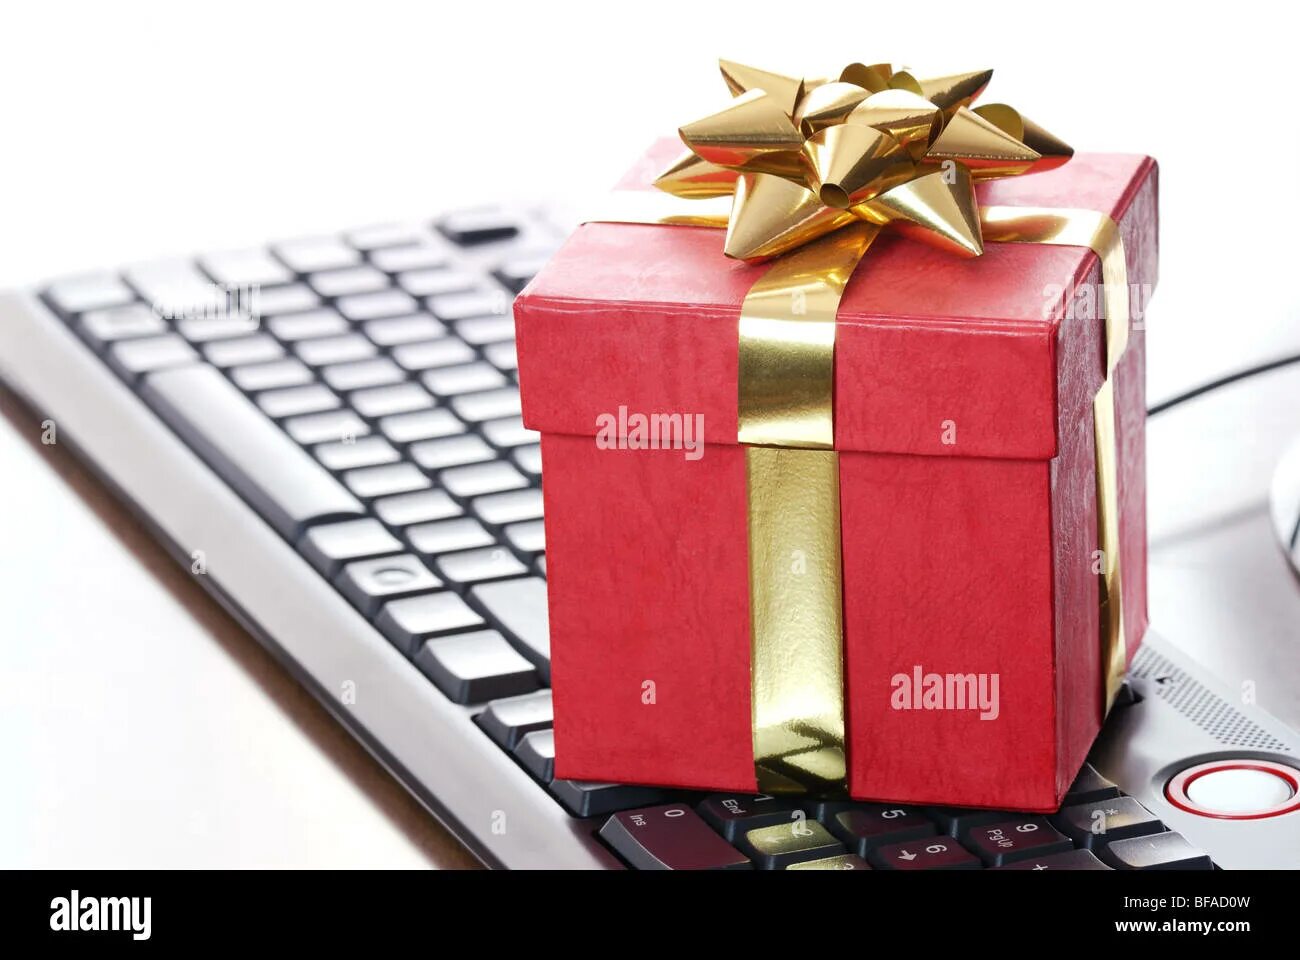 Хорошие подарки приходит. Подарок. Интернет в подарок. Ноутбук в подарок. Компьютер в подарок.